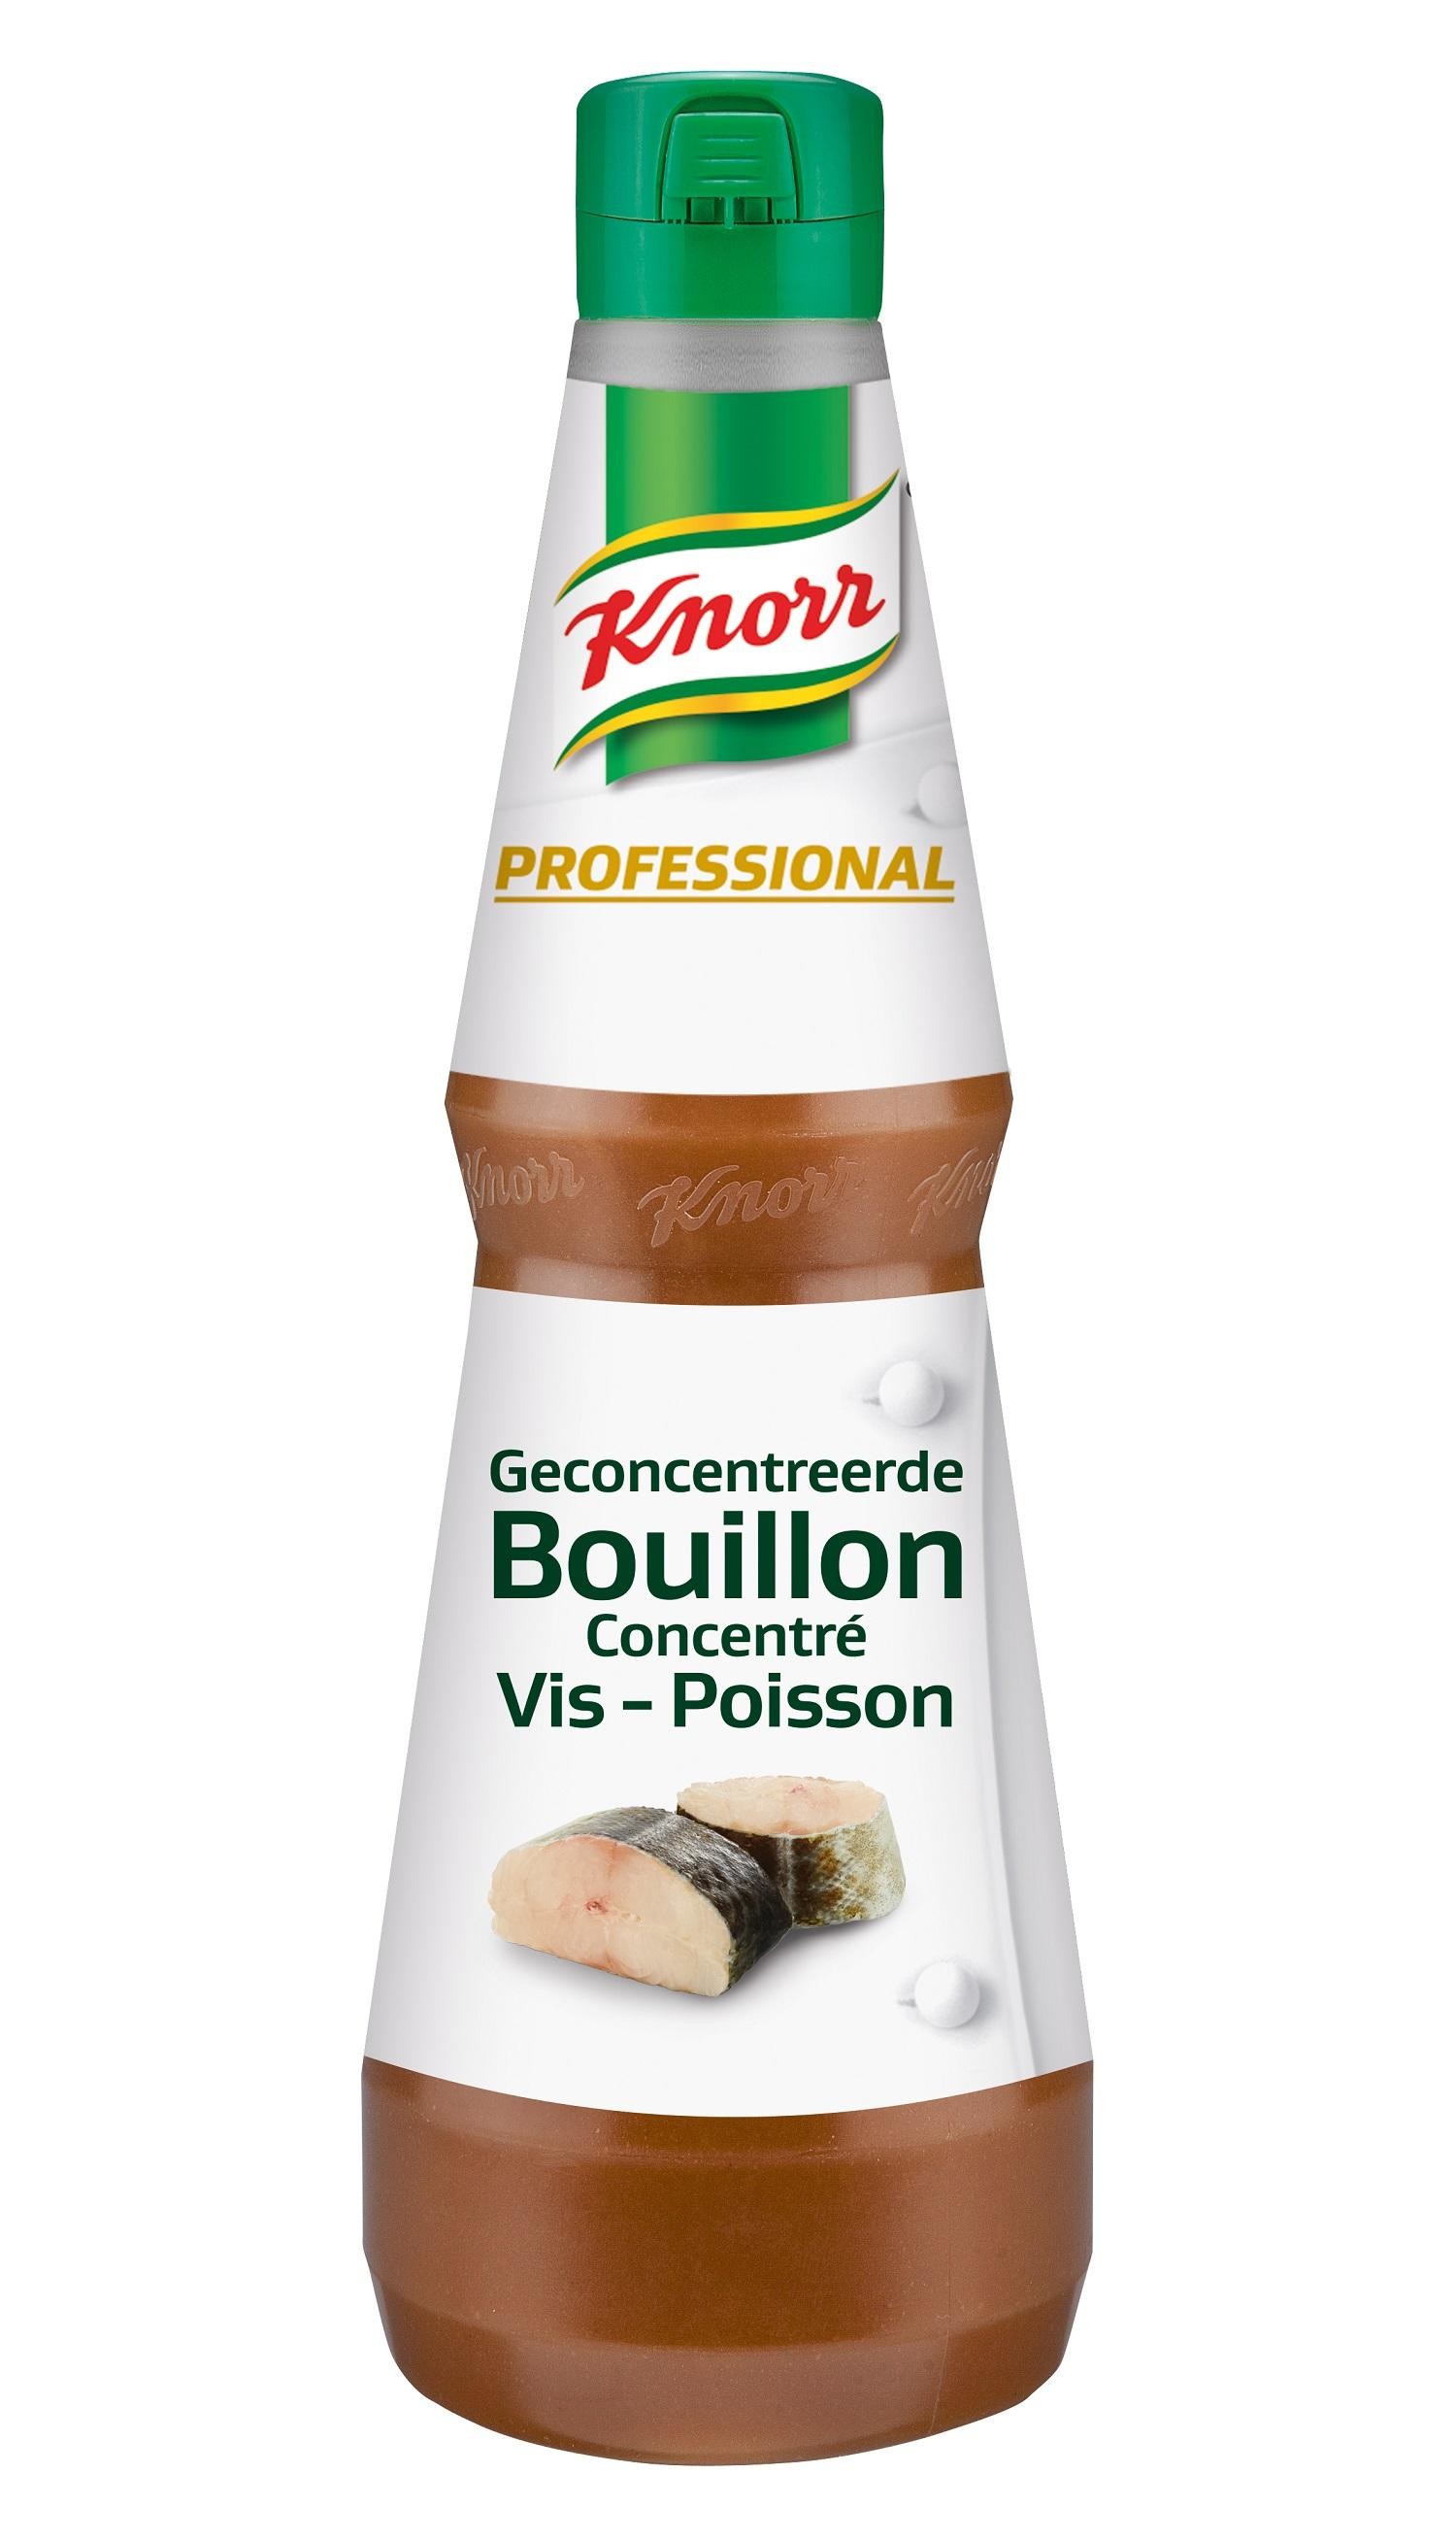 Knorr Geconcentreerde Visbouillon vloeibaar 1L Professional